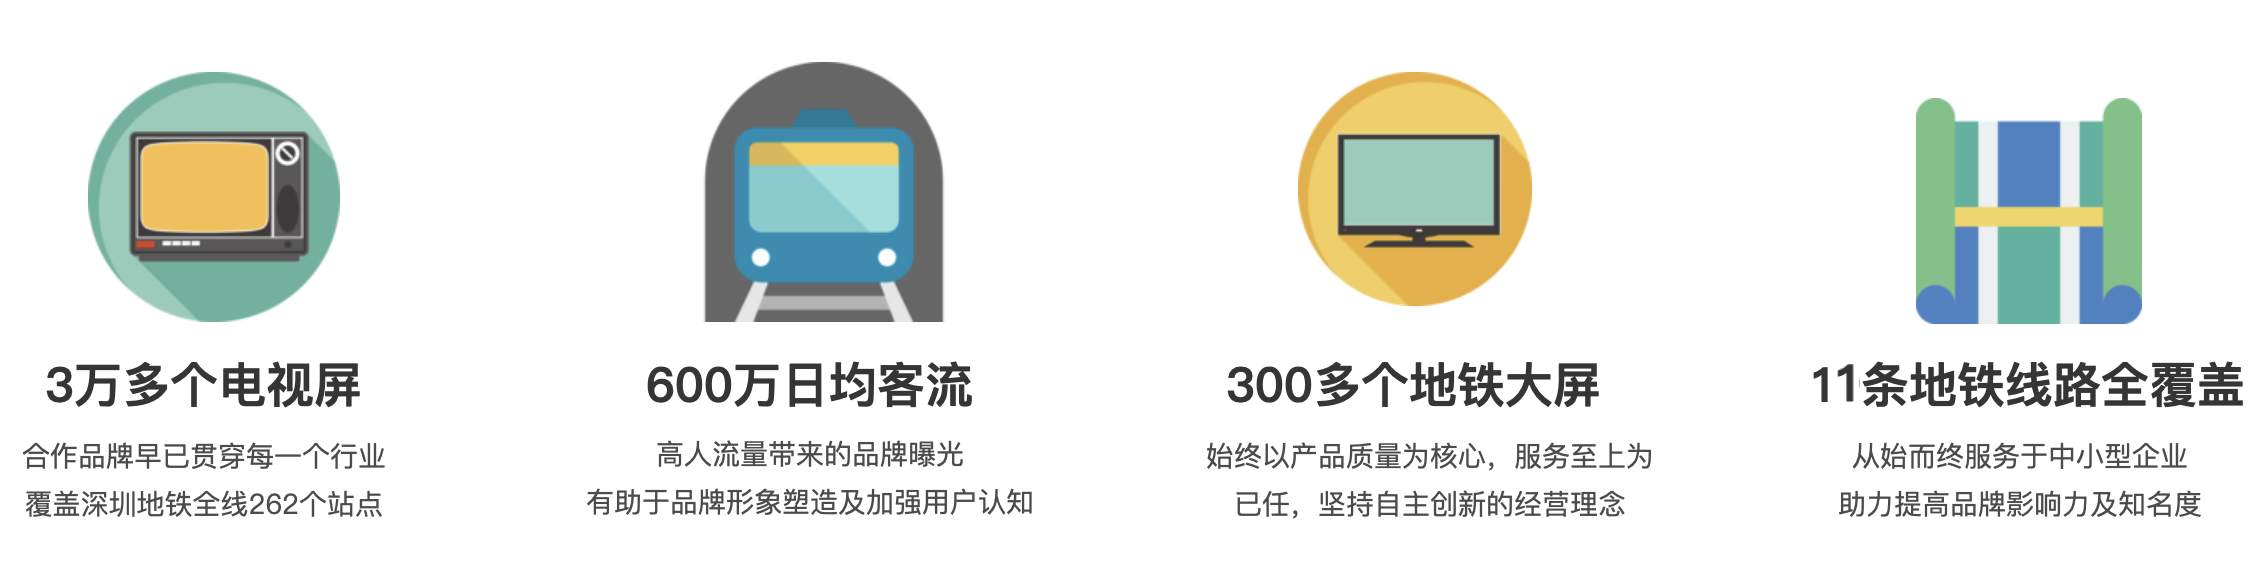 深圳地铁电视广告